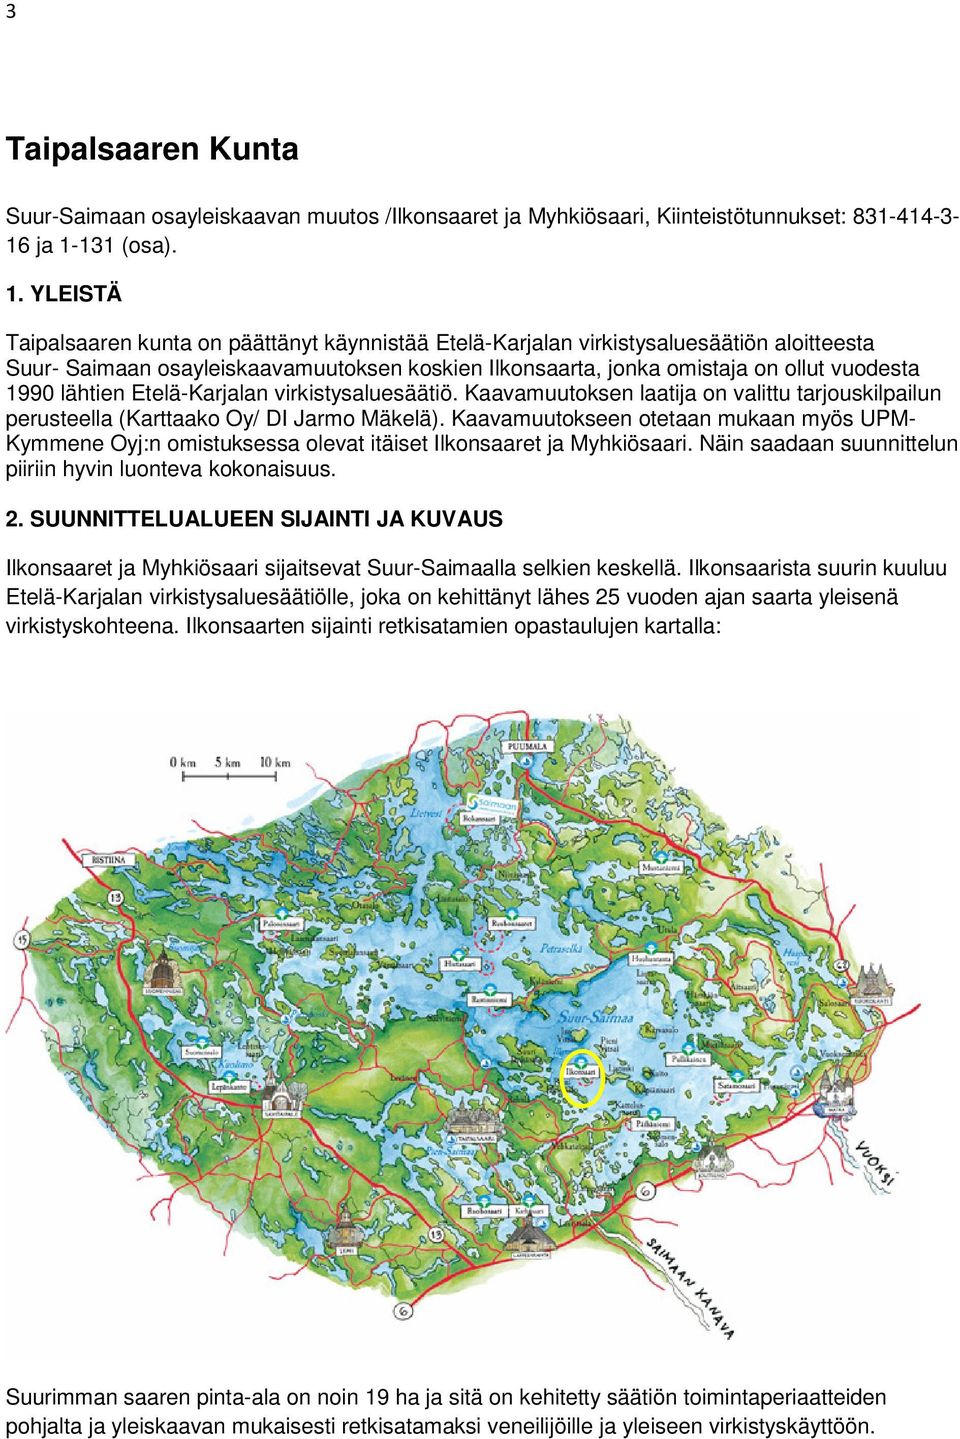 YLEISTÄ Taipalsaaren kunta on päättänyt käynnistää Etelä-Karjalan virkistysaluesäätiön aloitteesta Suur- Saimaan osayleiskaavamuutoksen koskien Ilkonsaarta, jonka omistaja on ollut vuodesta 1990